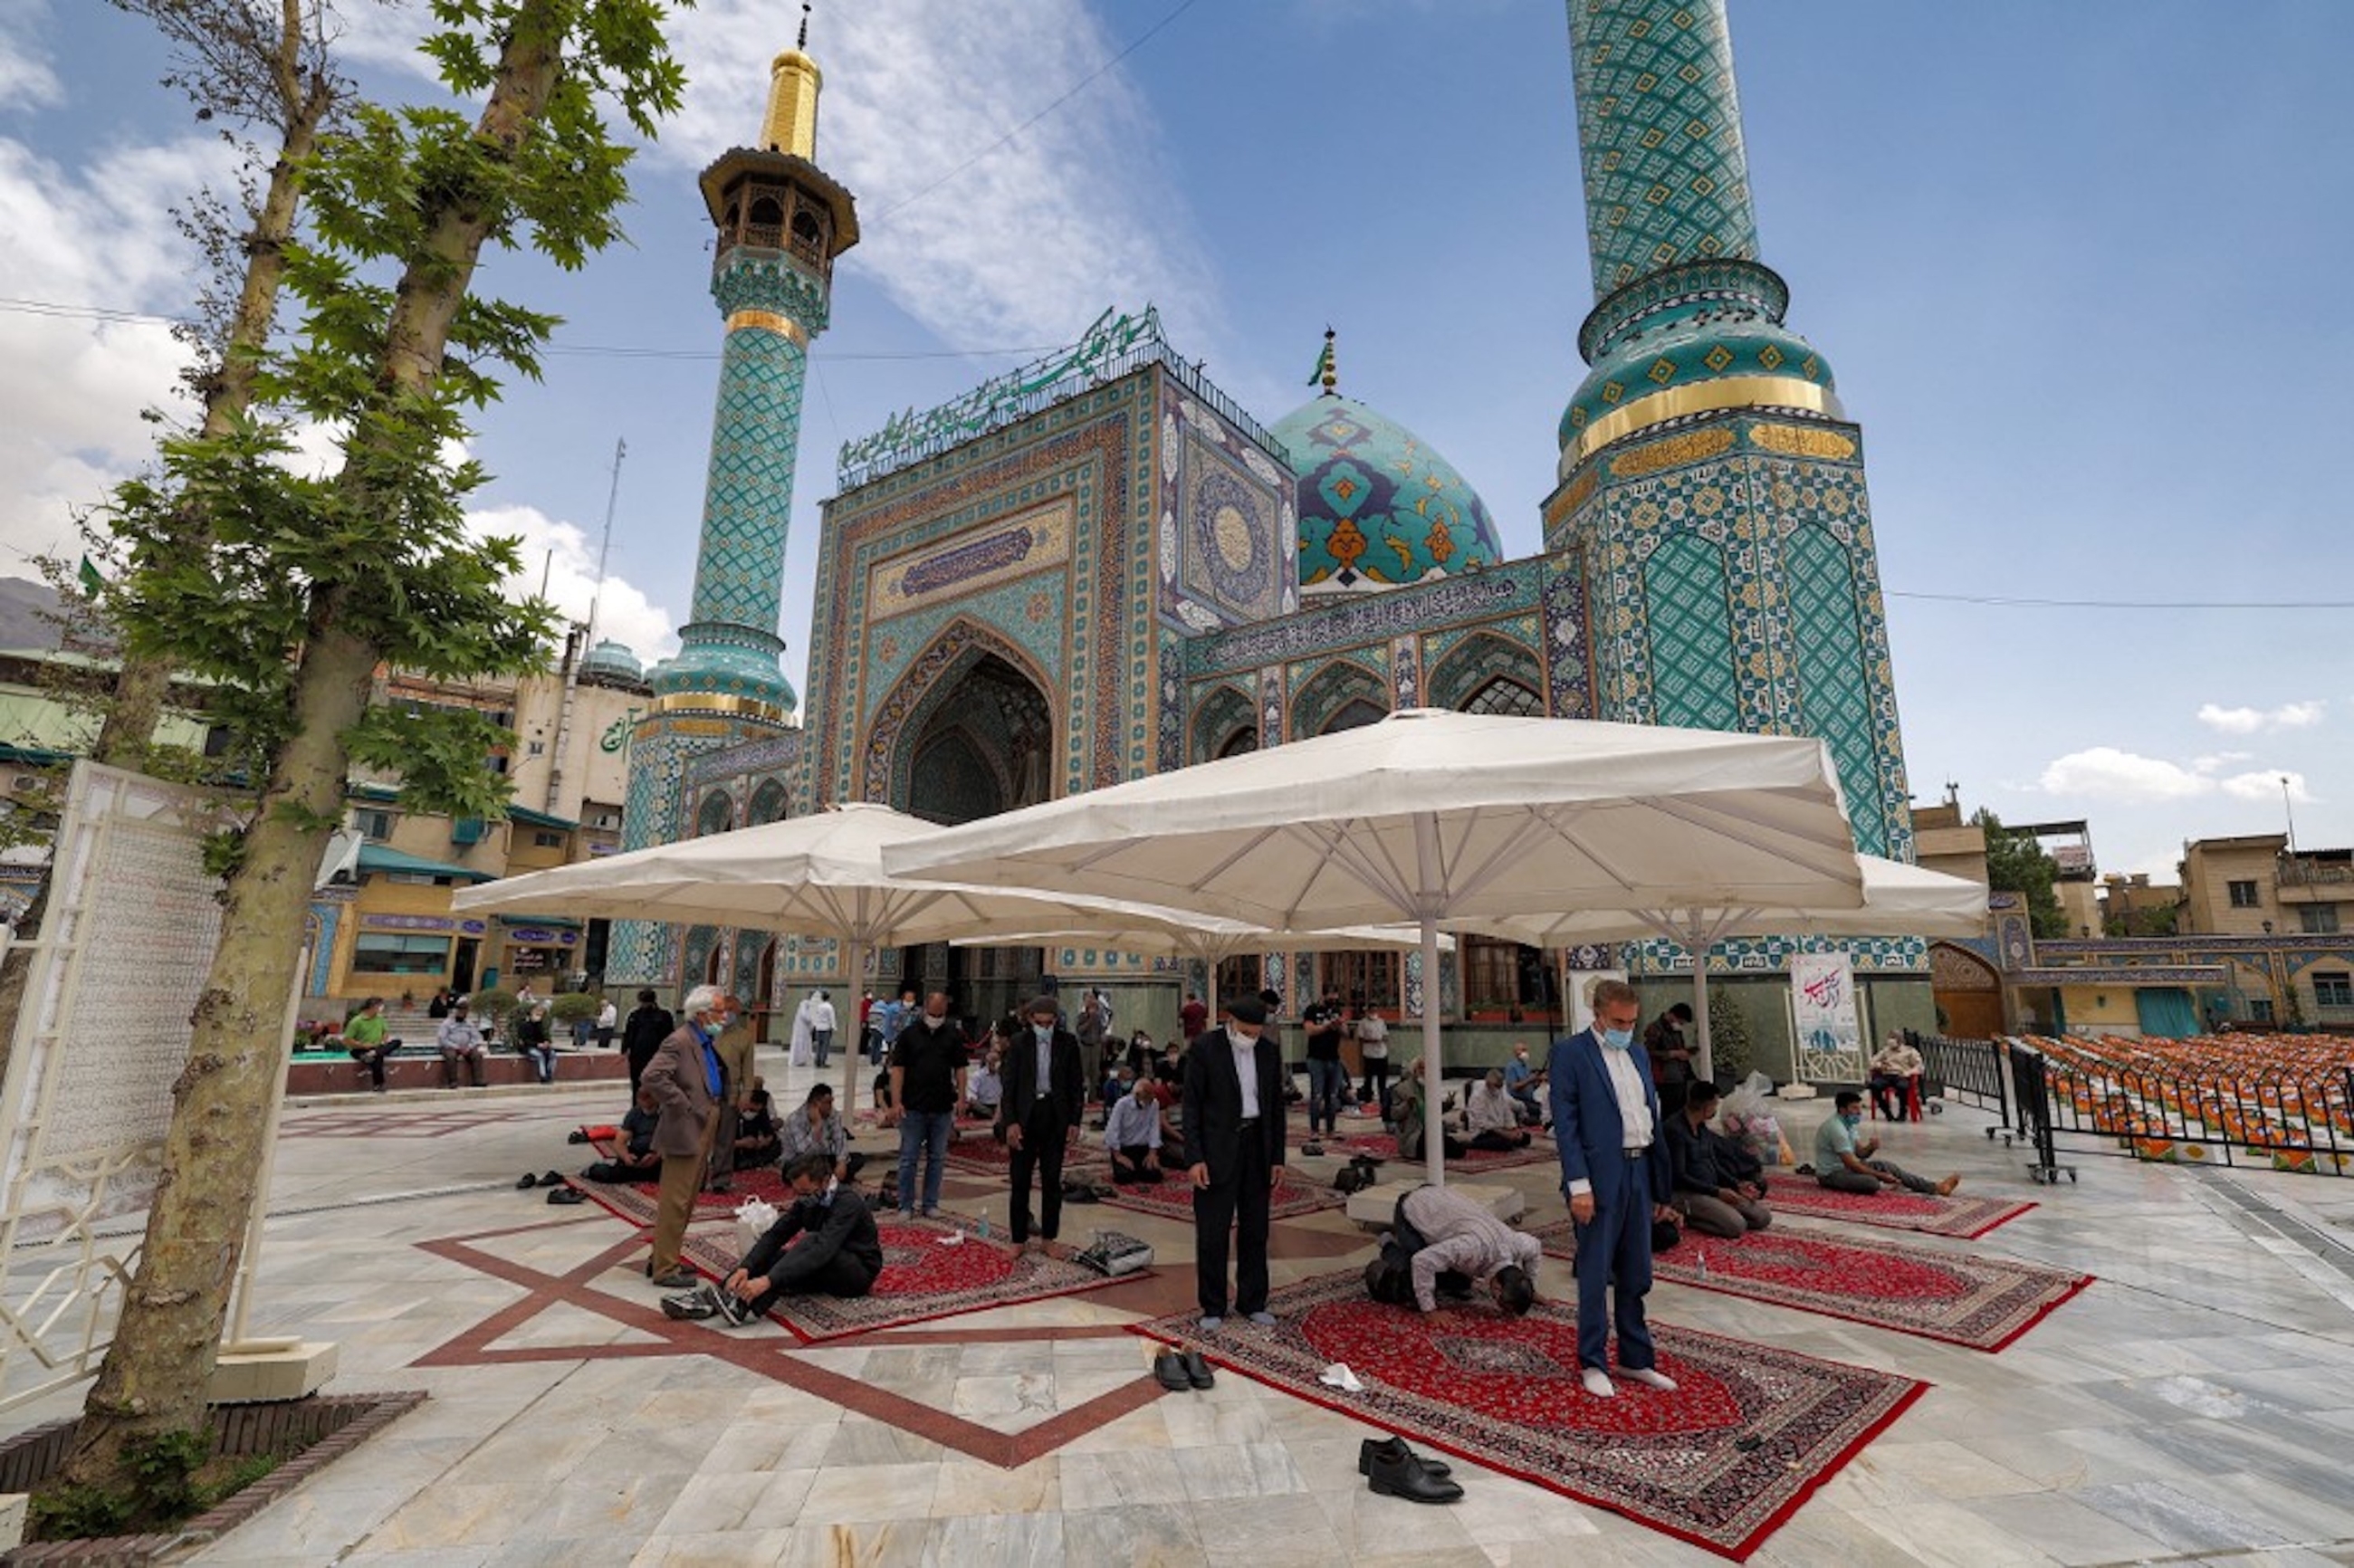 IRAN. Des fidèles prient devant le sanctuaire de l’Imamzadeh Saleh, dans le district de Shemiran, à Téhéran, le 14 avril 2021 (AFP)